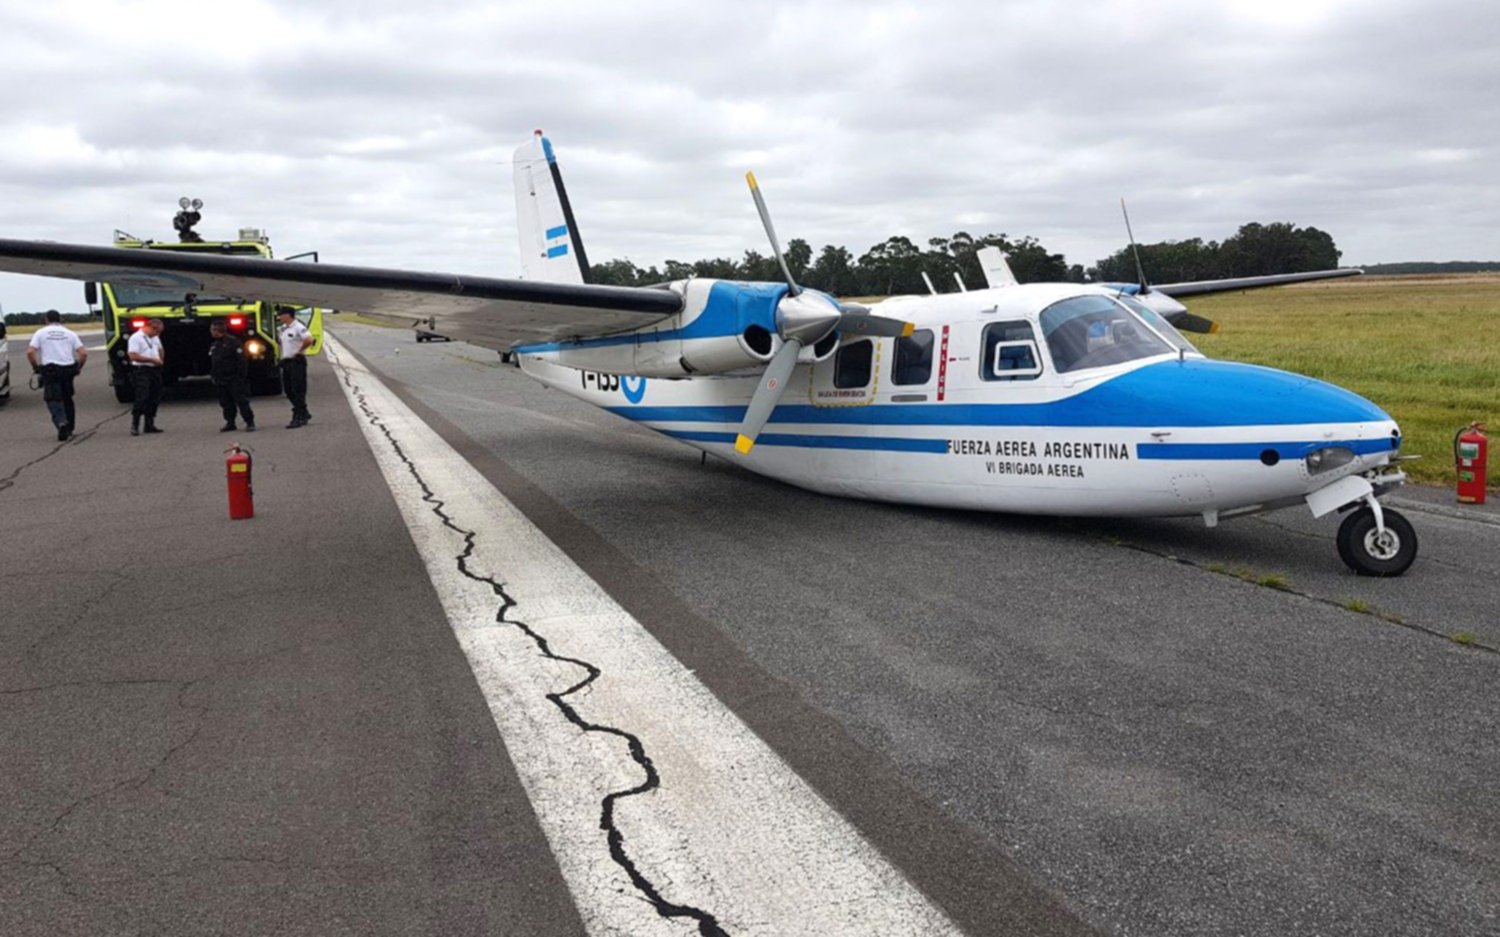  Tras desperfecto de un avión durante aterrizaje cierran parcialmente el aeropuerto de Mar del Plata